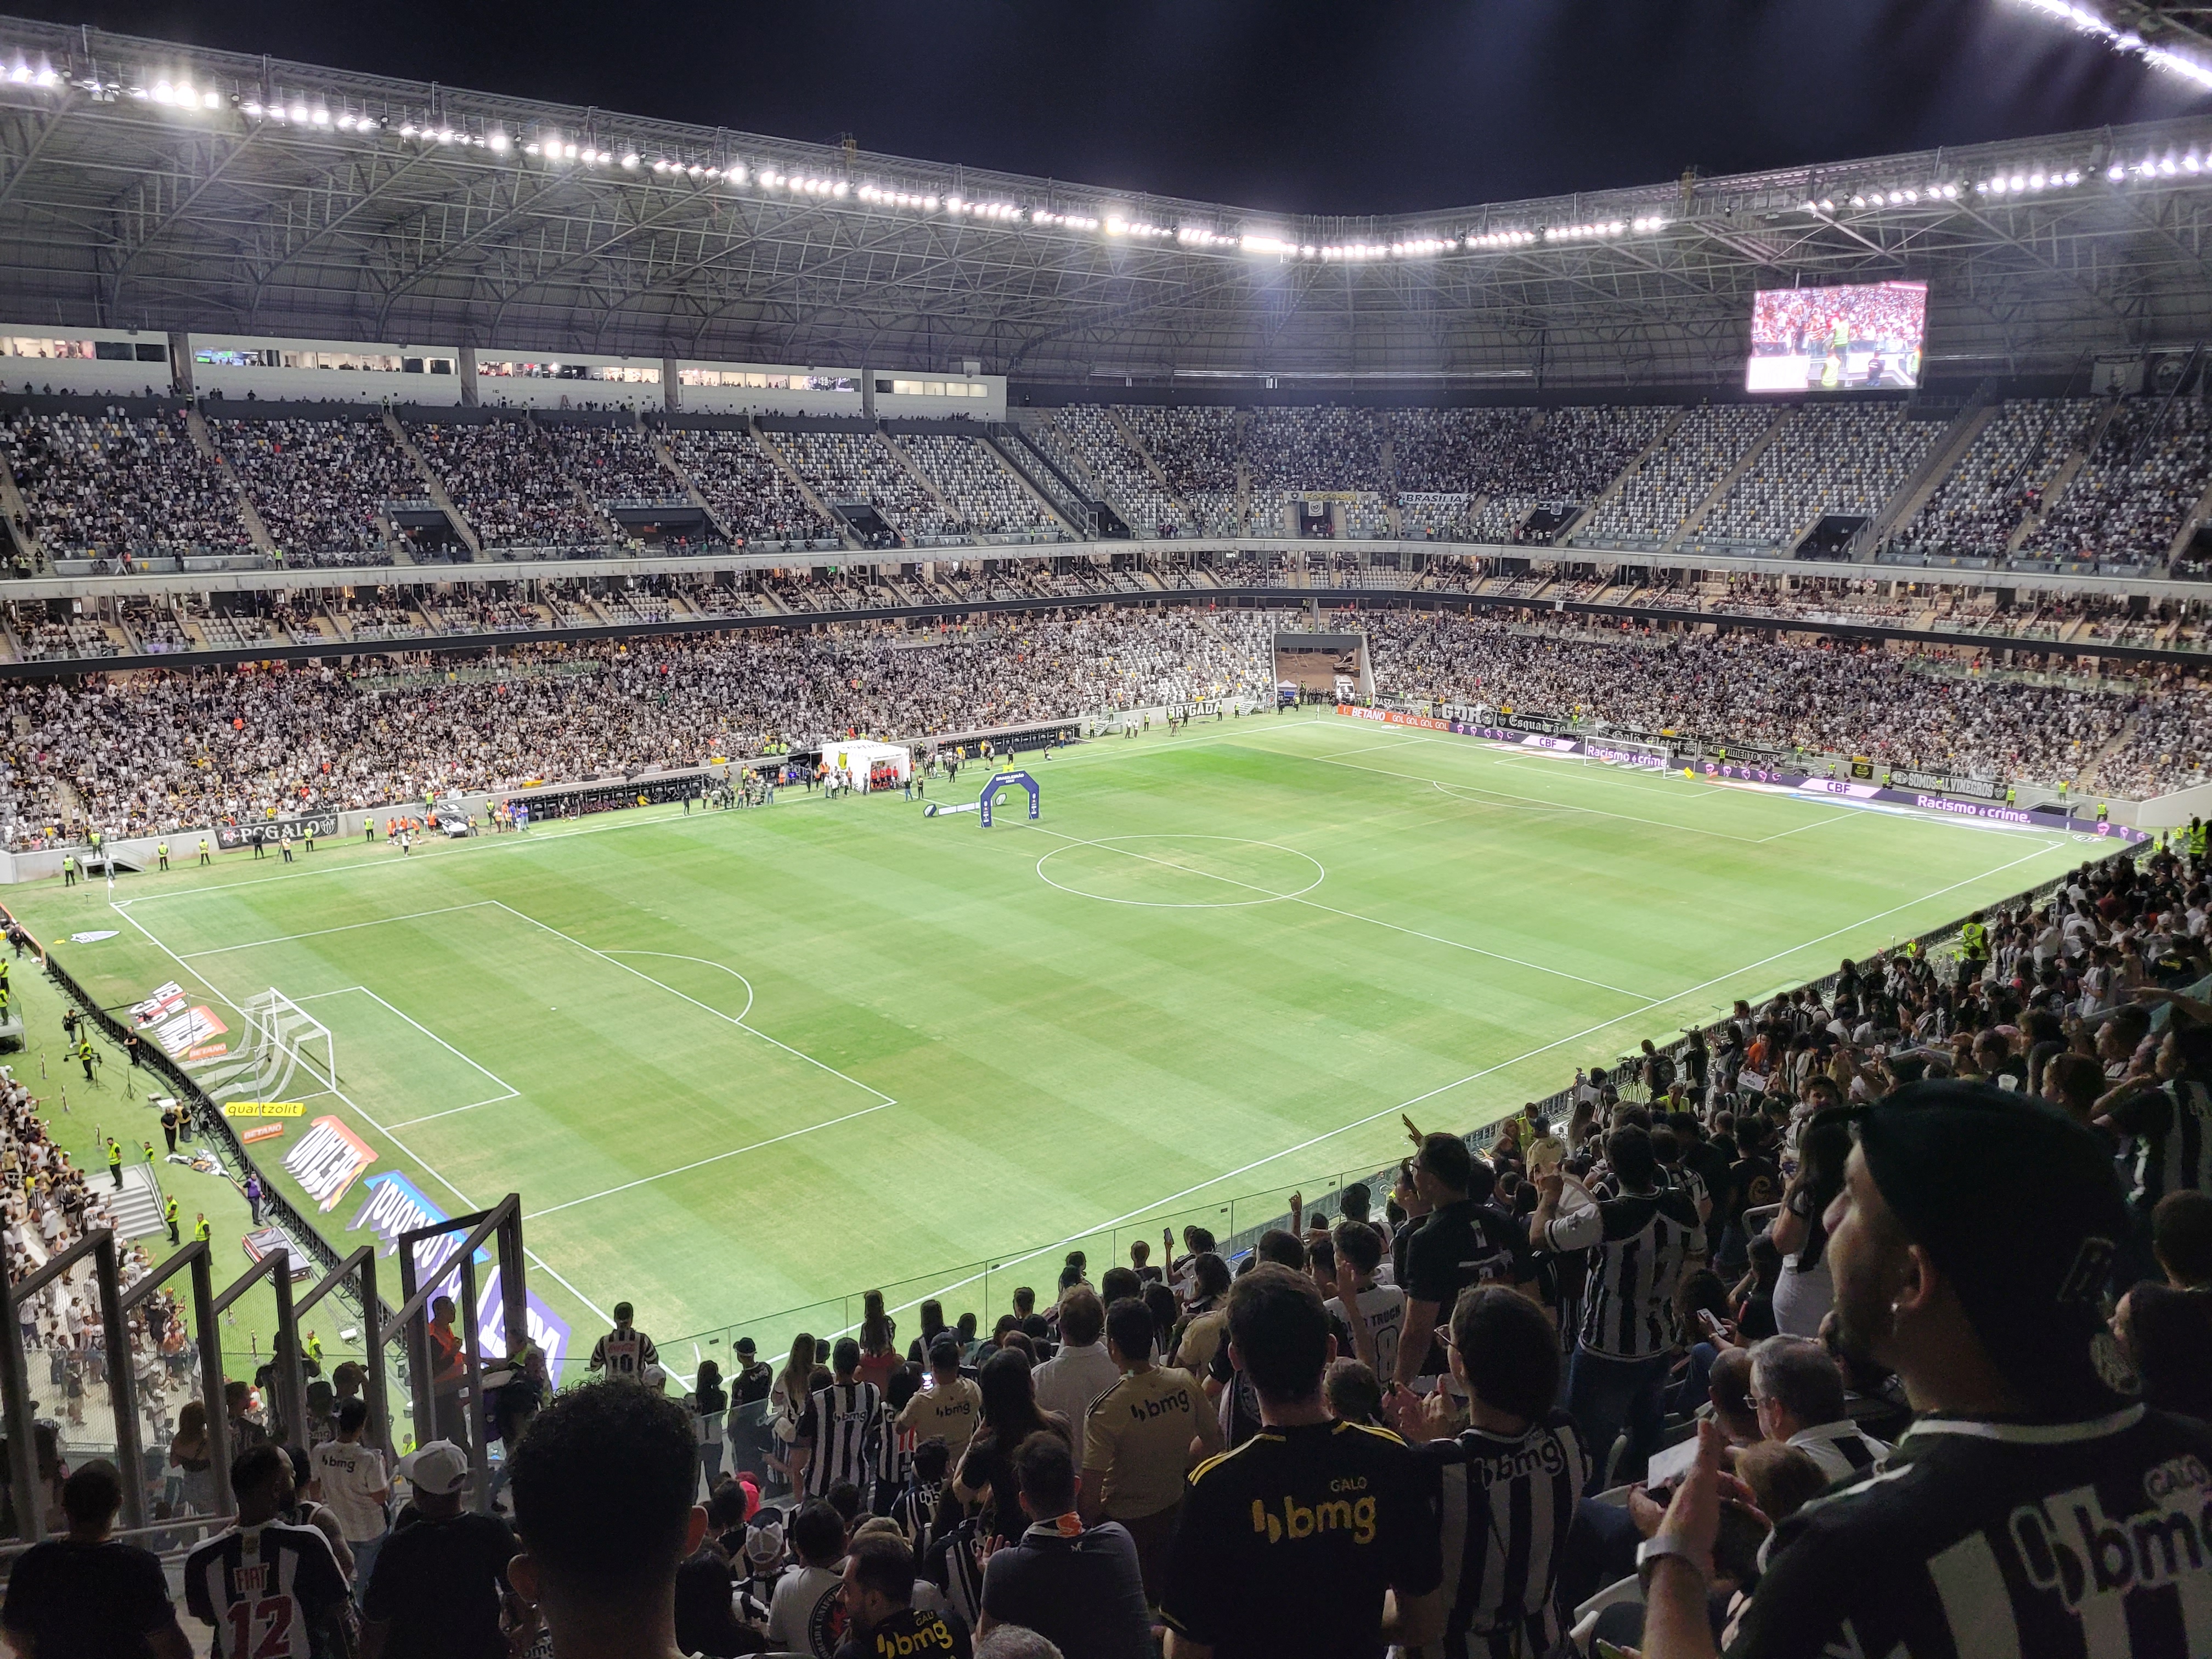 Arena João Pessoa - Campo de futebol ※2023 TOP 10※ perto de mim